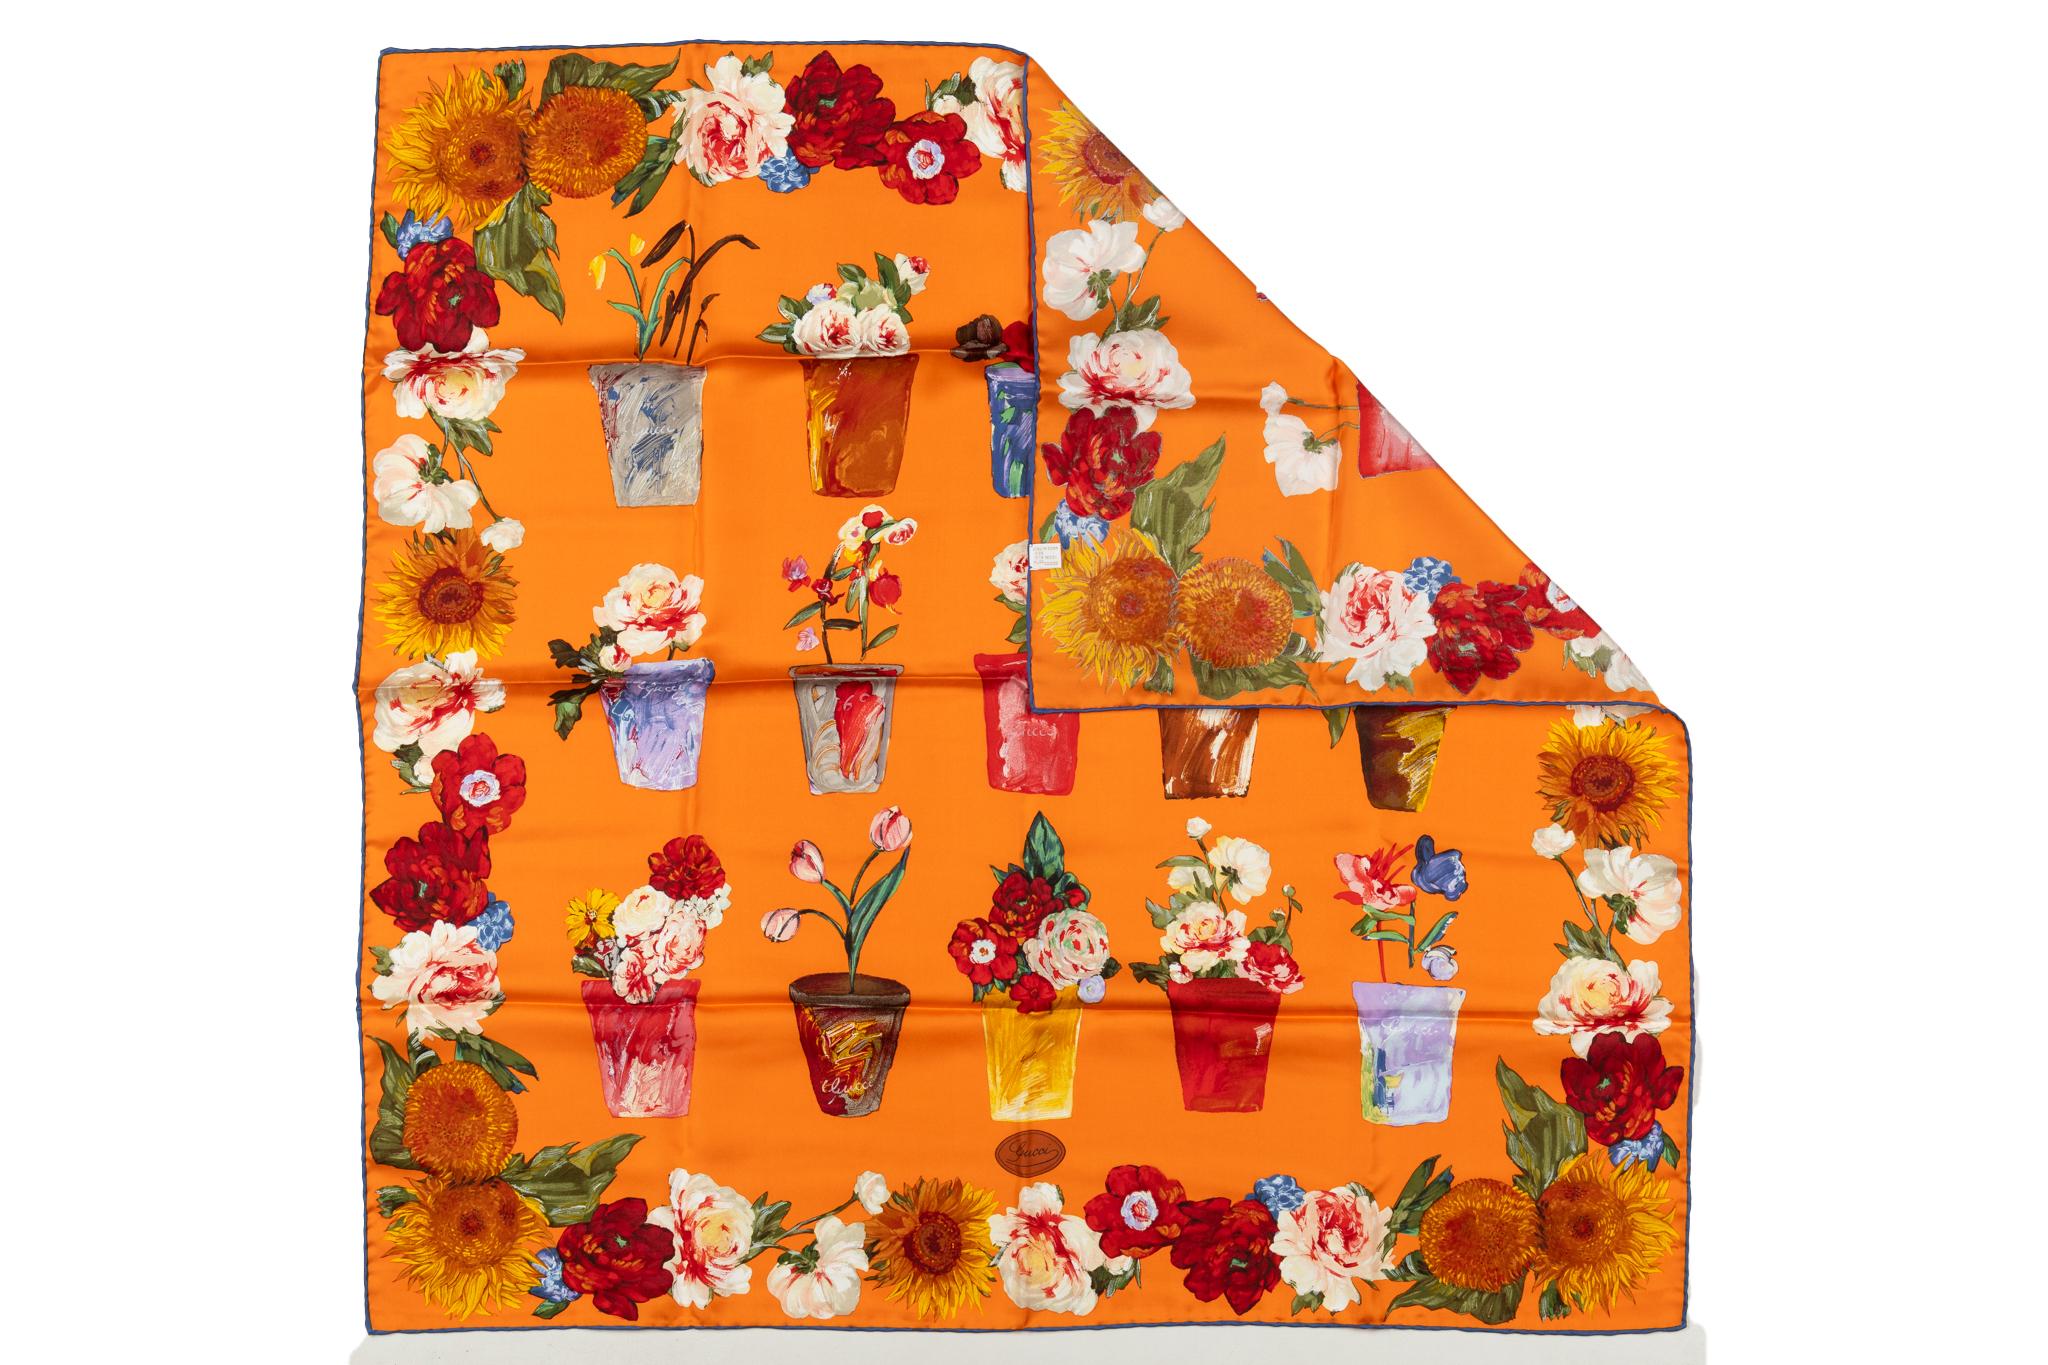 Leuchtend orangefarbener Seidenschal von Gucci mit handgerollten Kanten. Blumenvasen mit fröhlichem Design.